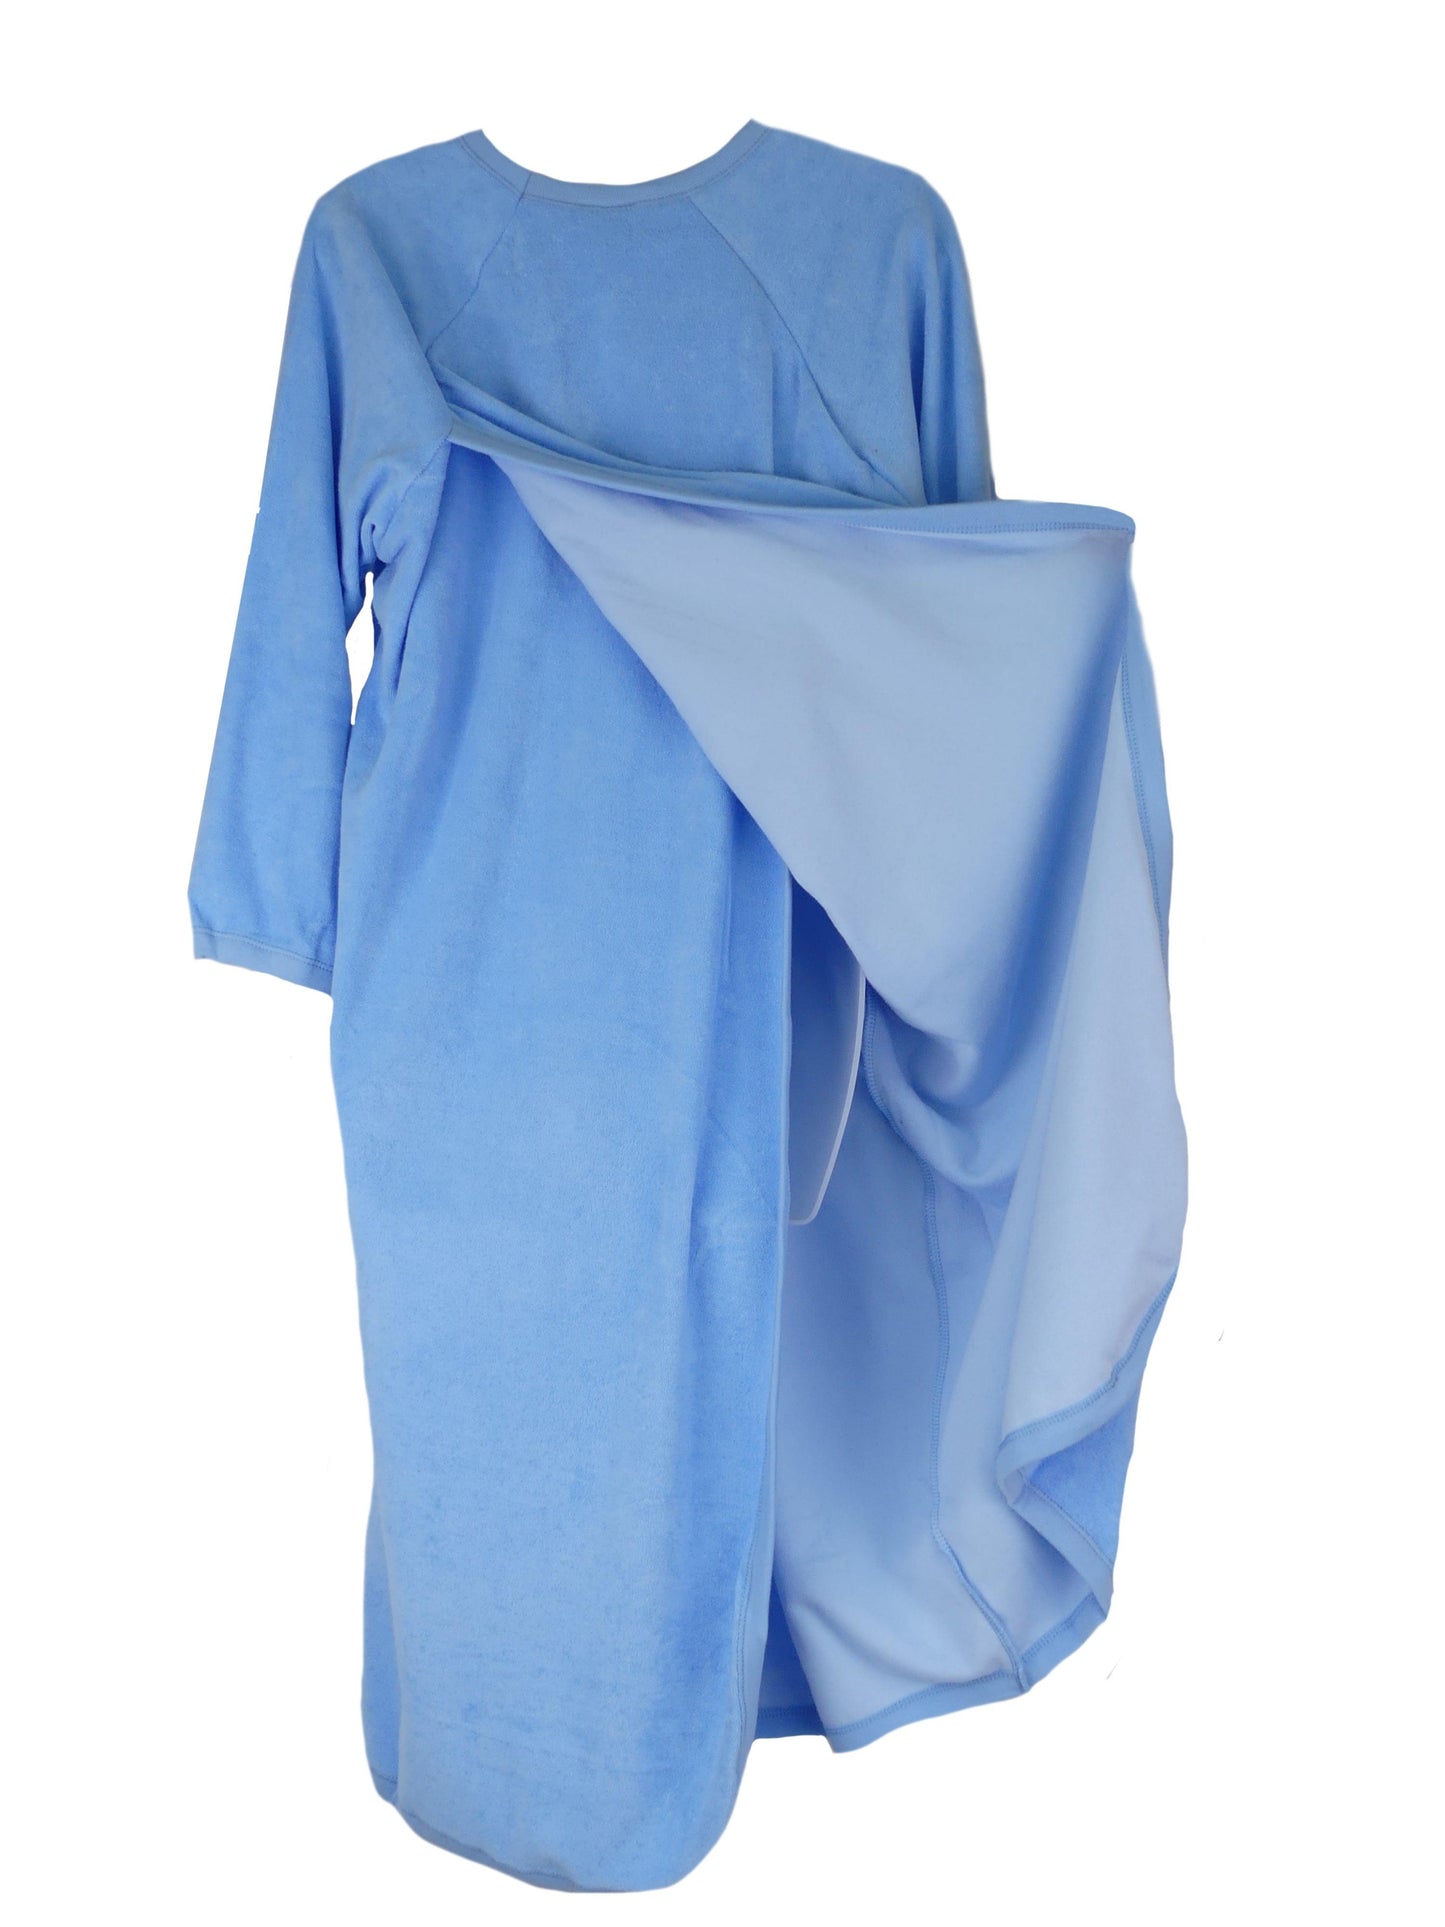 Women's Adaptive Nightwear: 100% Cotton Open Back Nightgown - M003